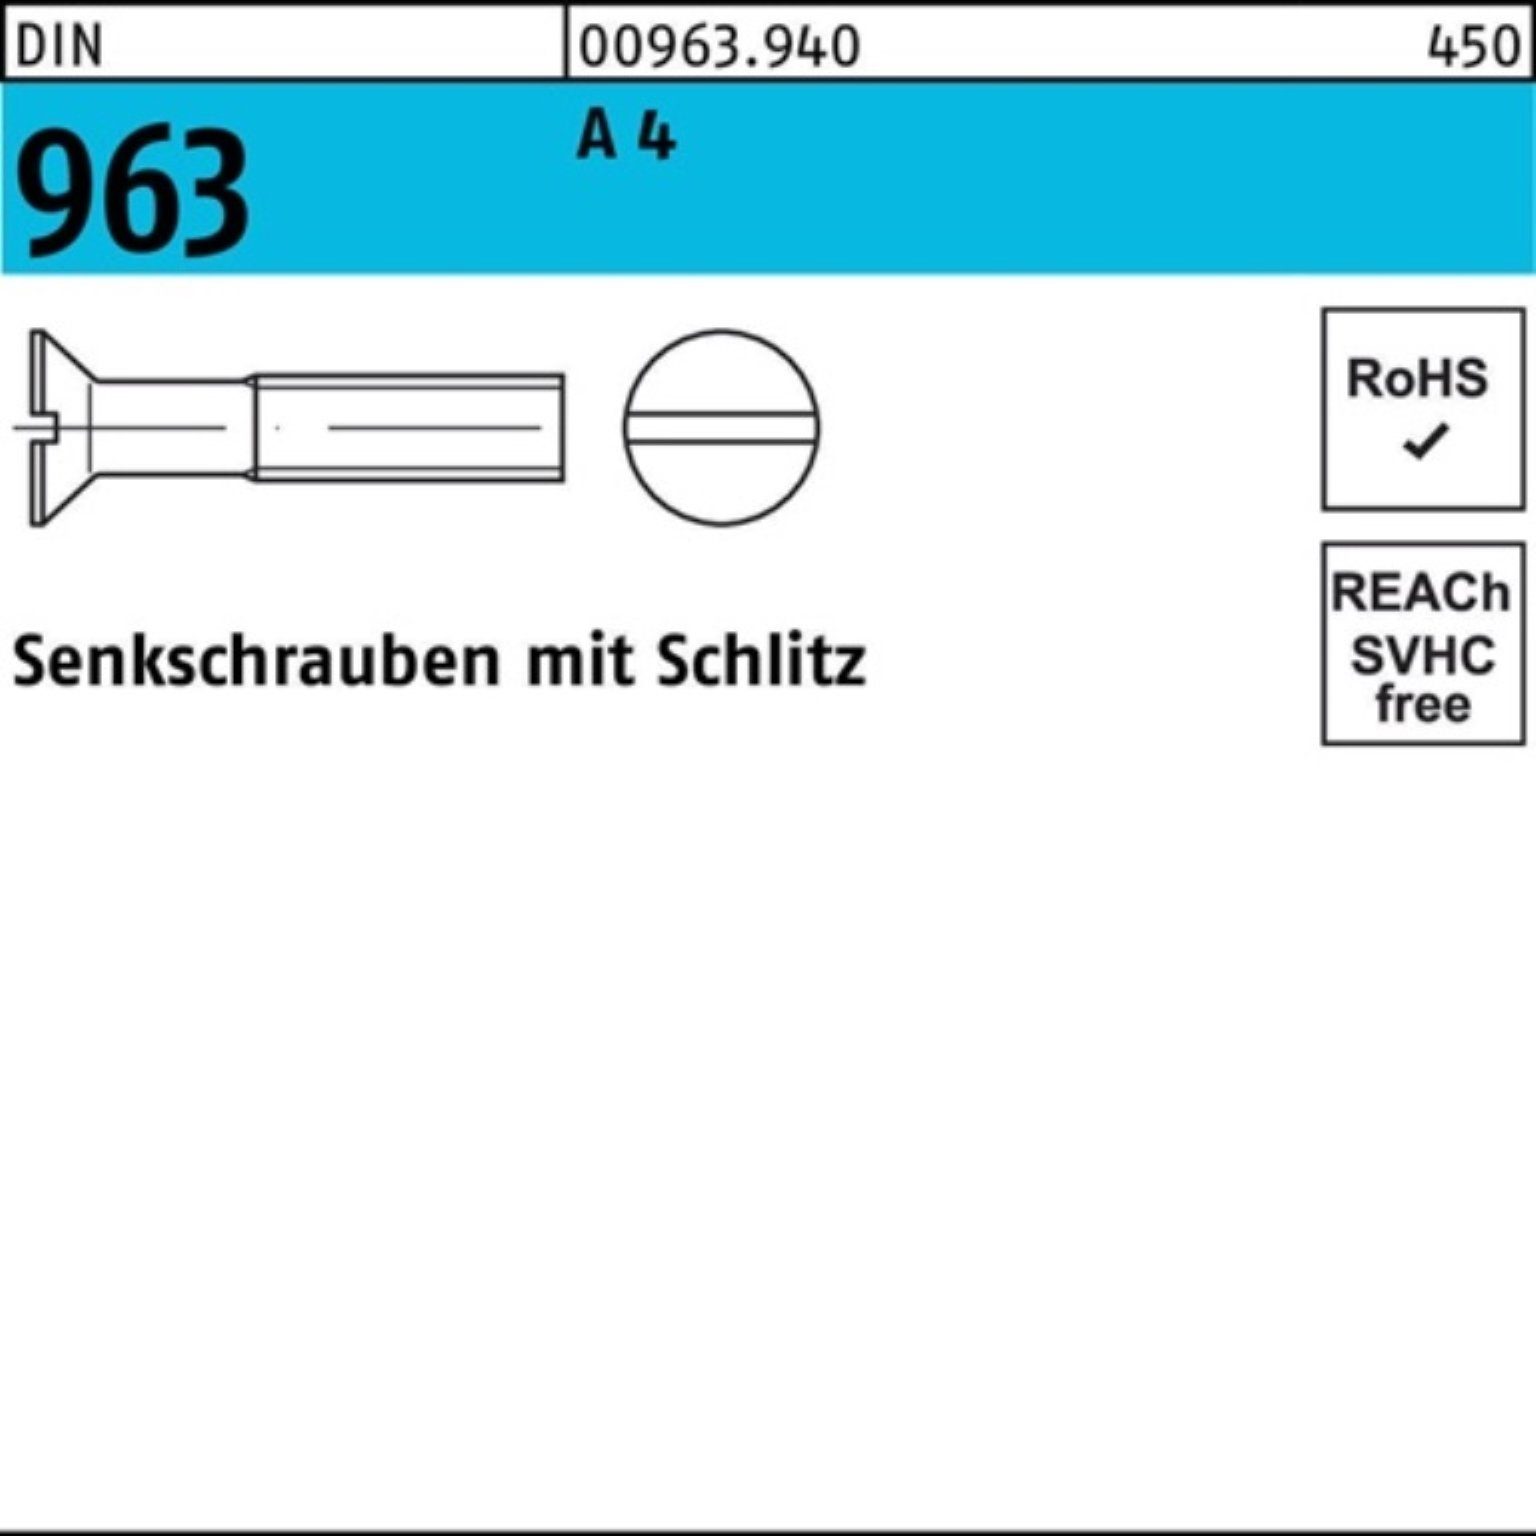 Reyher Senkschraube 1000er Pack Senkschraube 963 Schlitz Stück 1000 M2x A 20 DIN 4 DIN 96